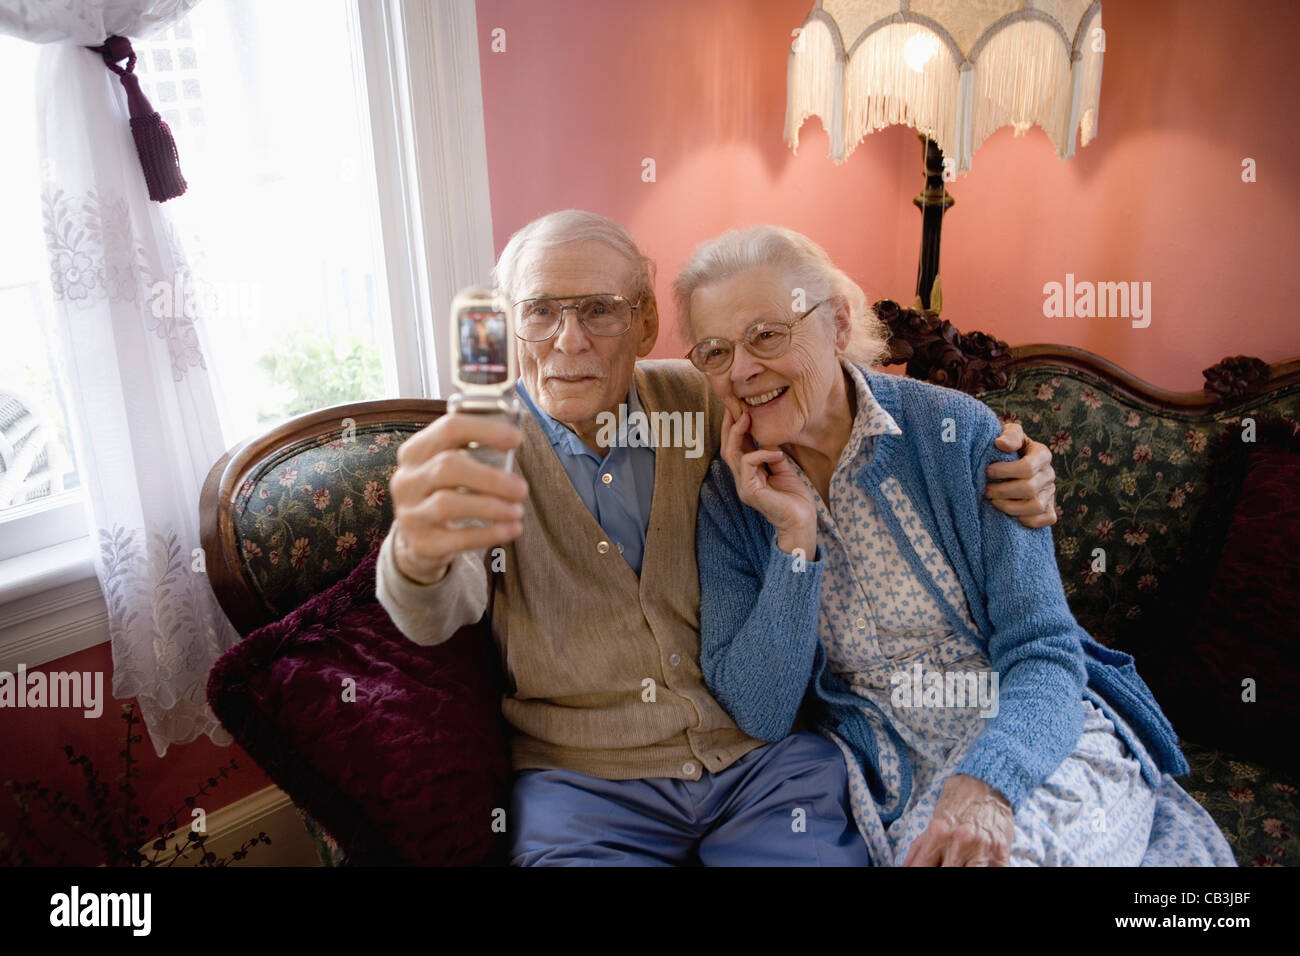 Älteres Paar, die sich mit Handy-Kamera fotografieren Stockfoto